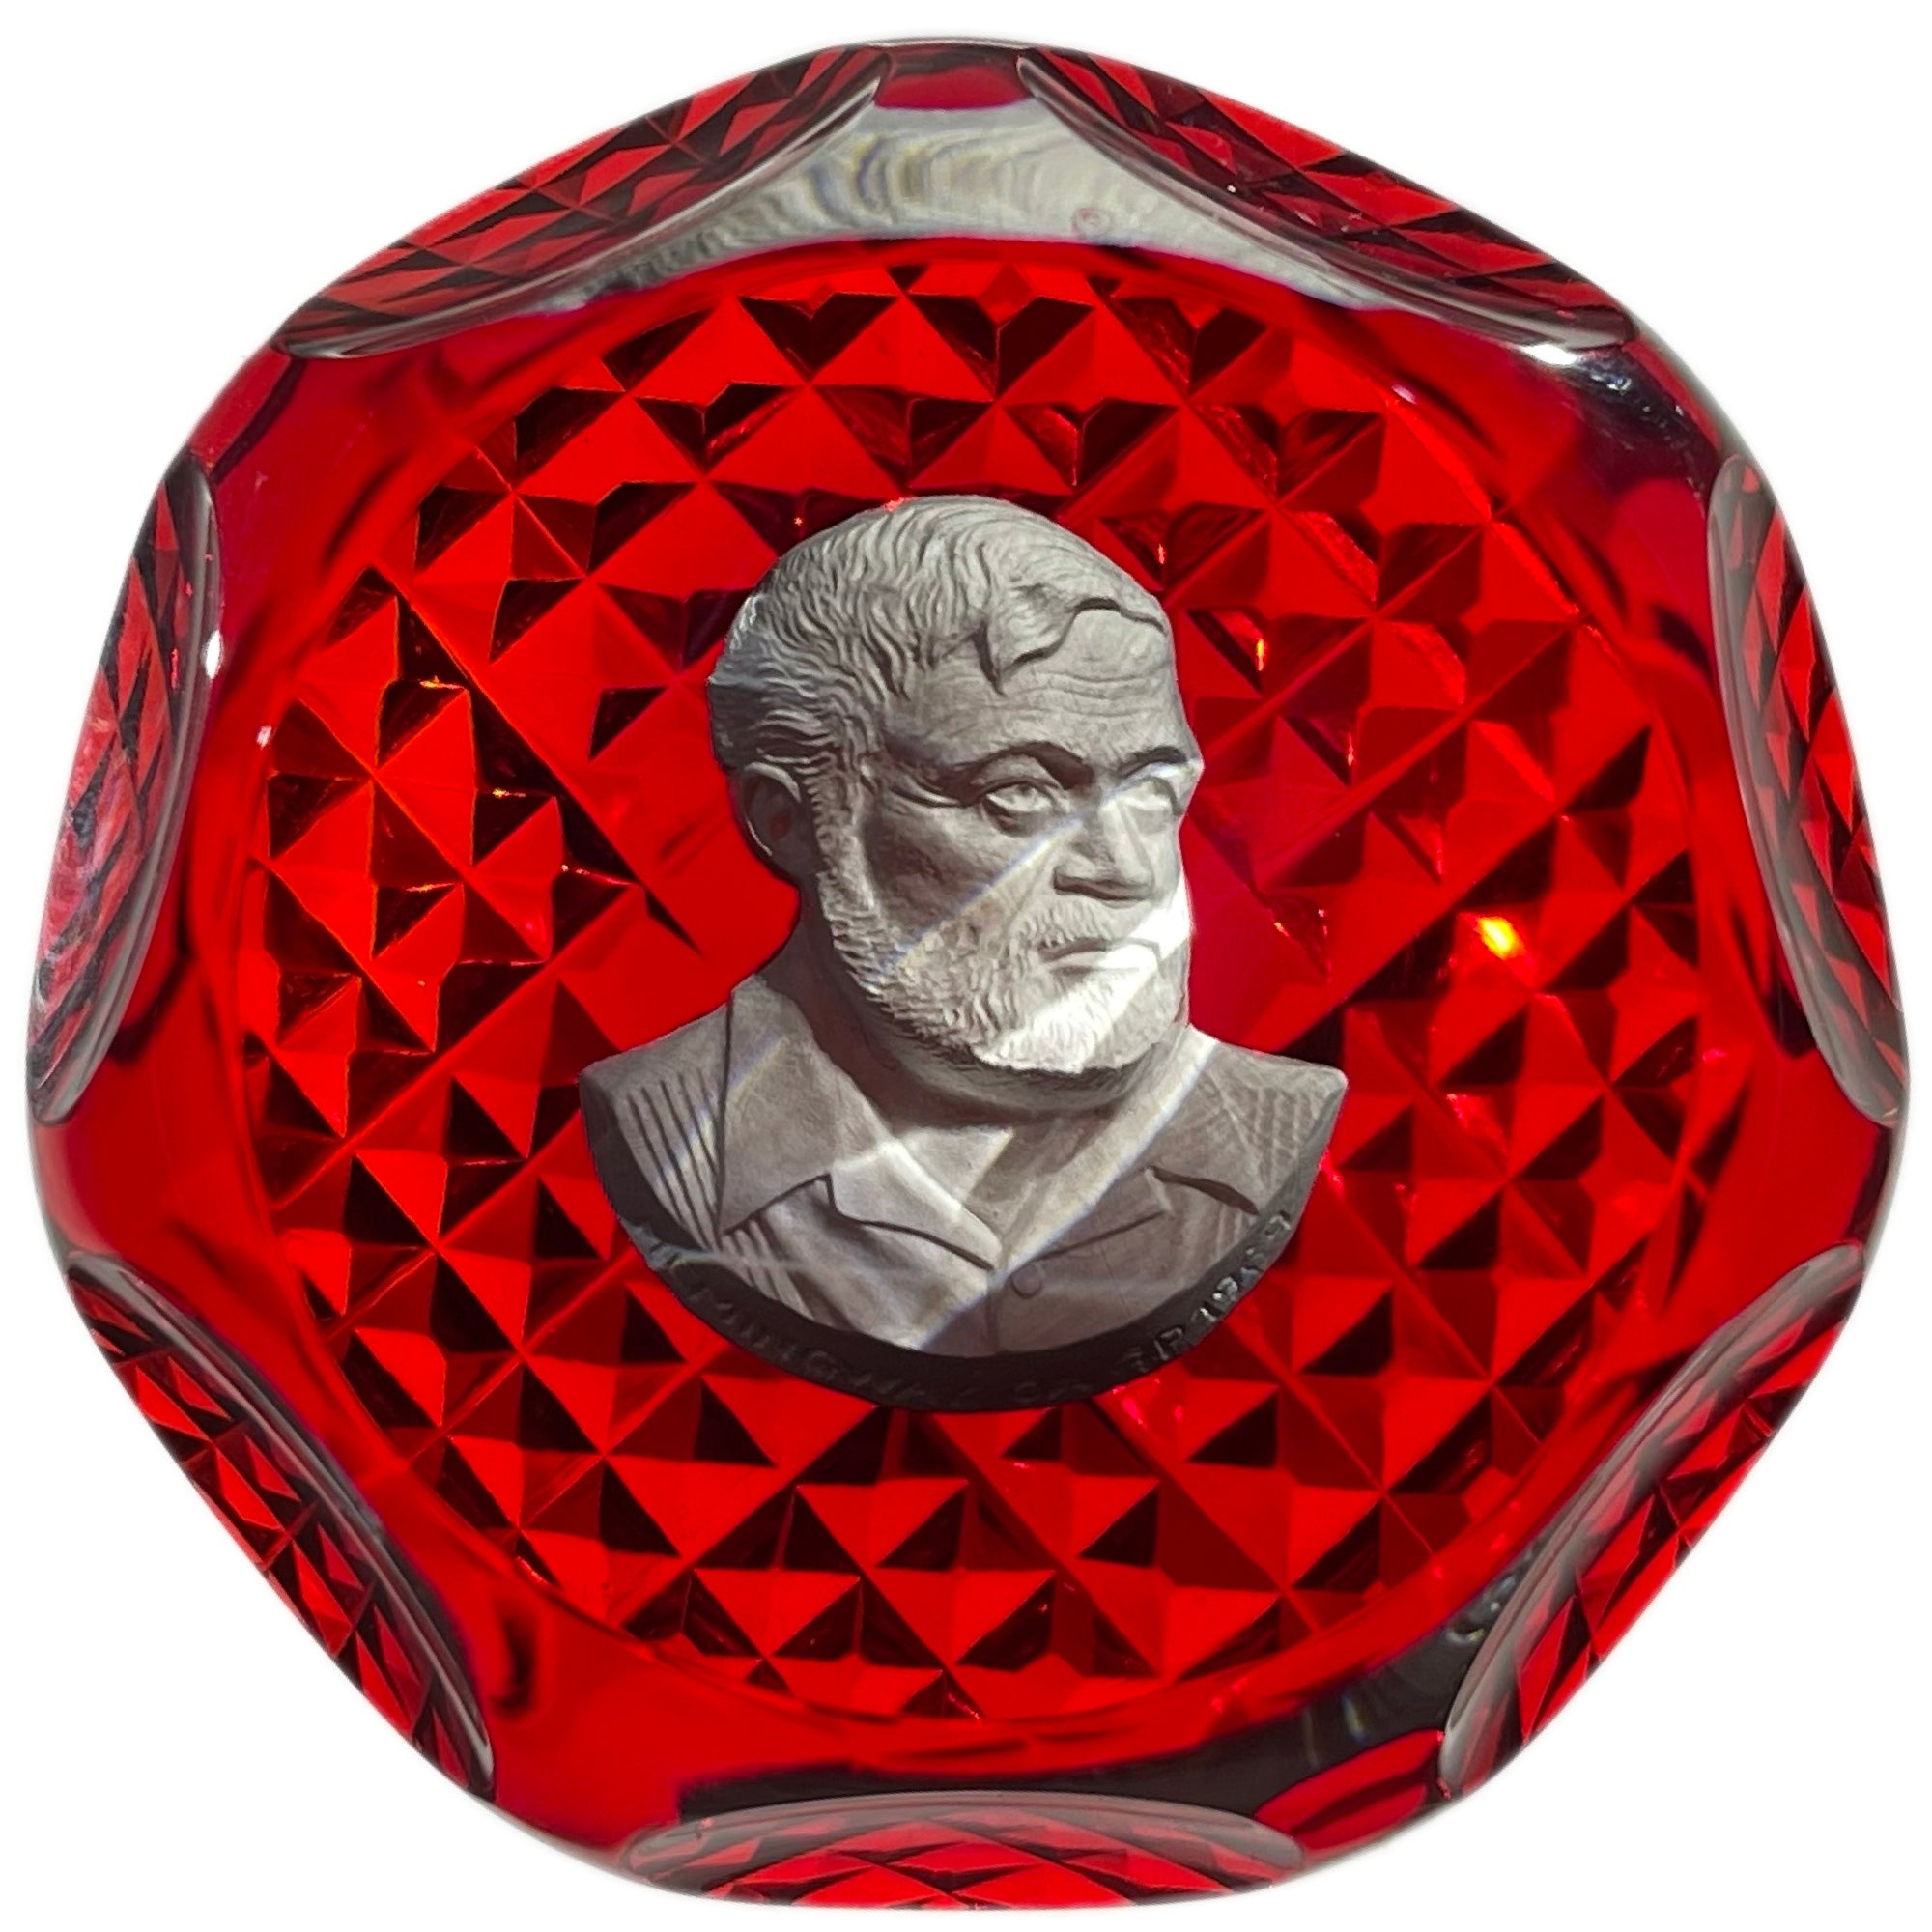 Faceted Cristal d’Albret 1969 Ernest Hemingway Sulphide on Red